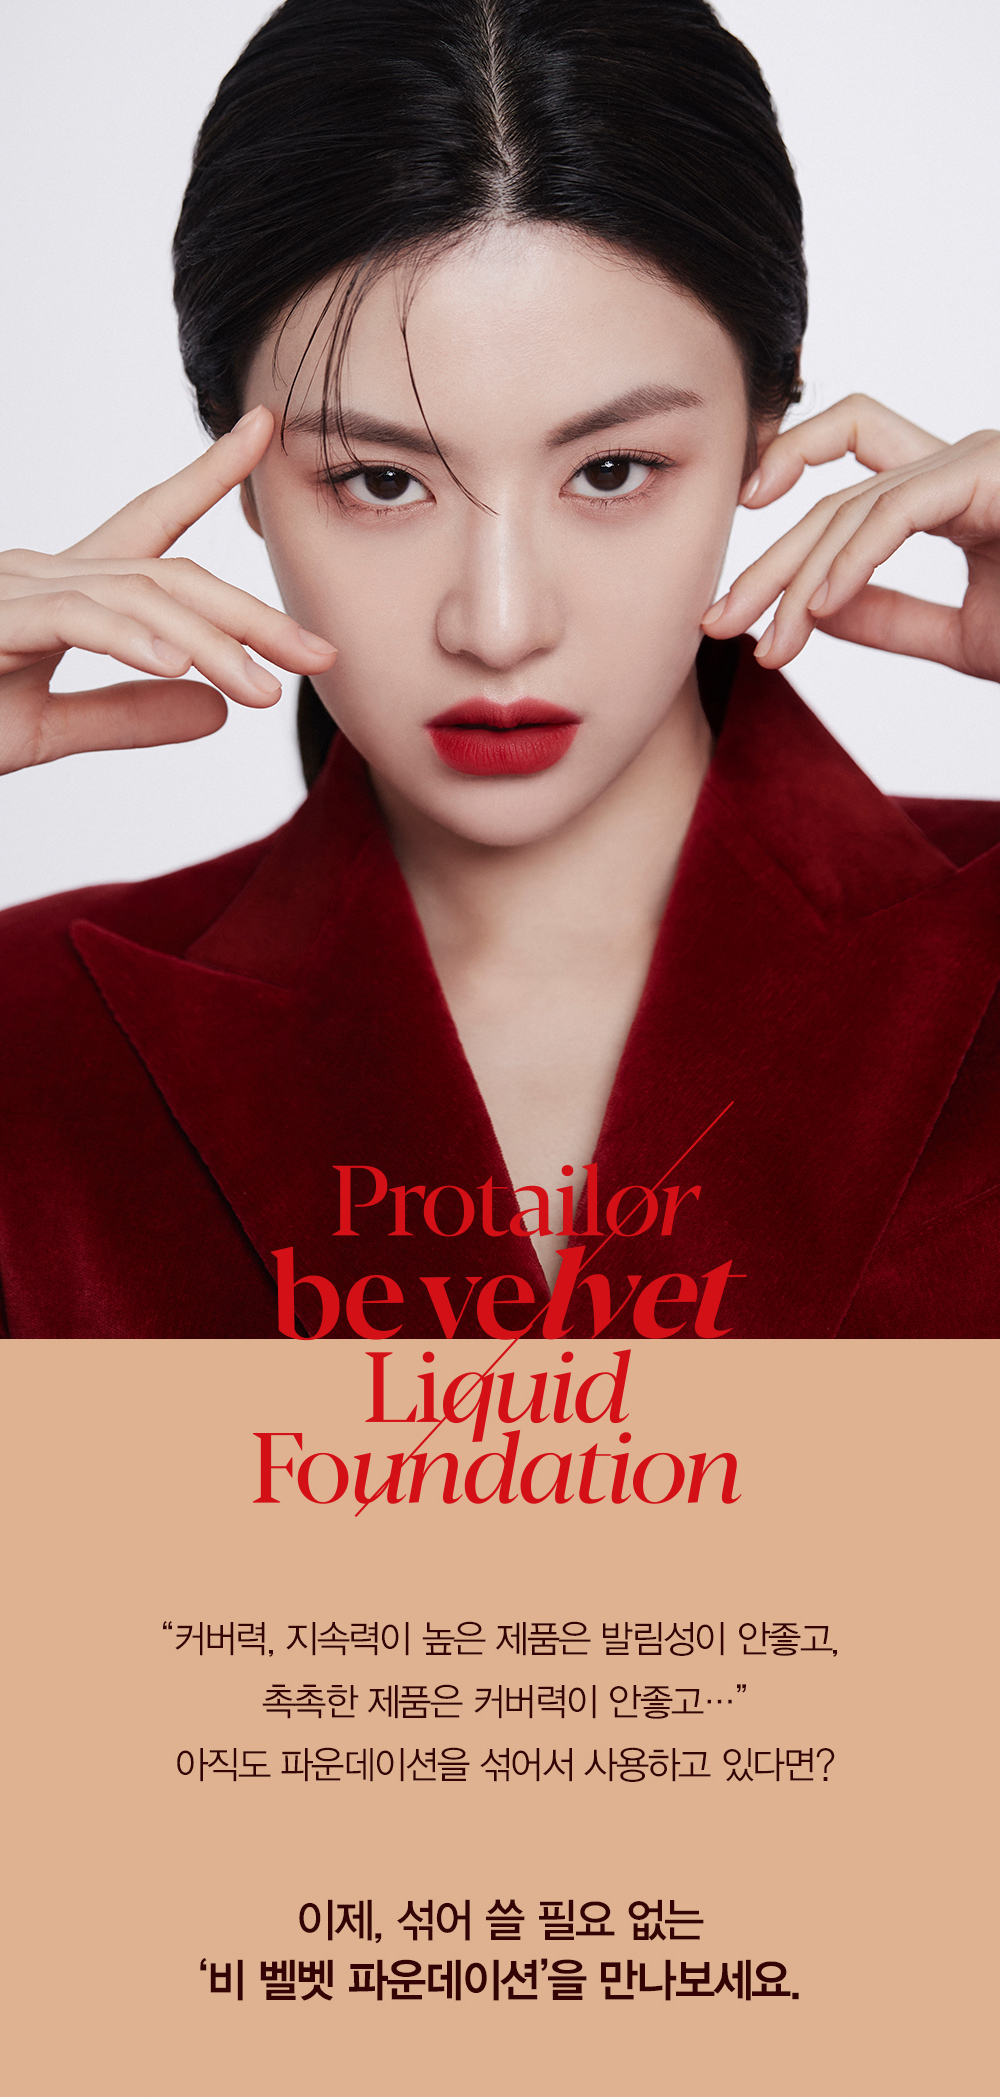 Protailor be velvet Liquid Foundation